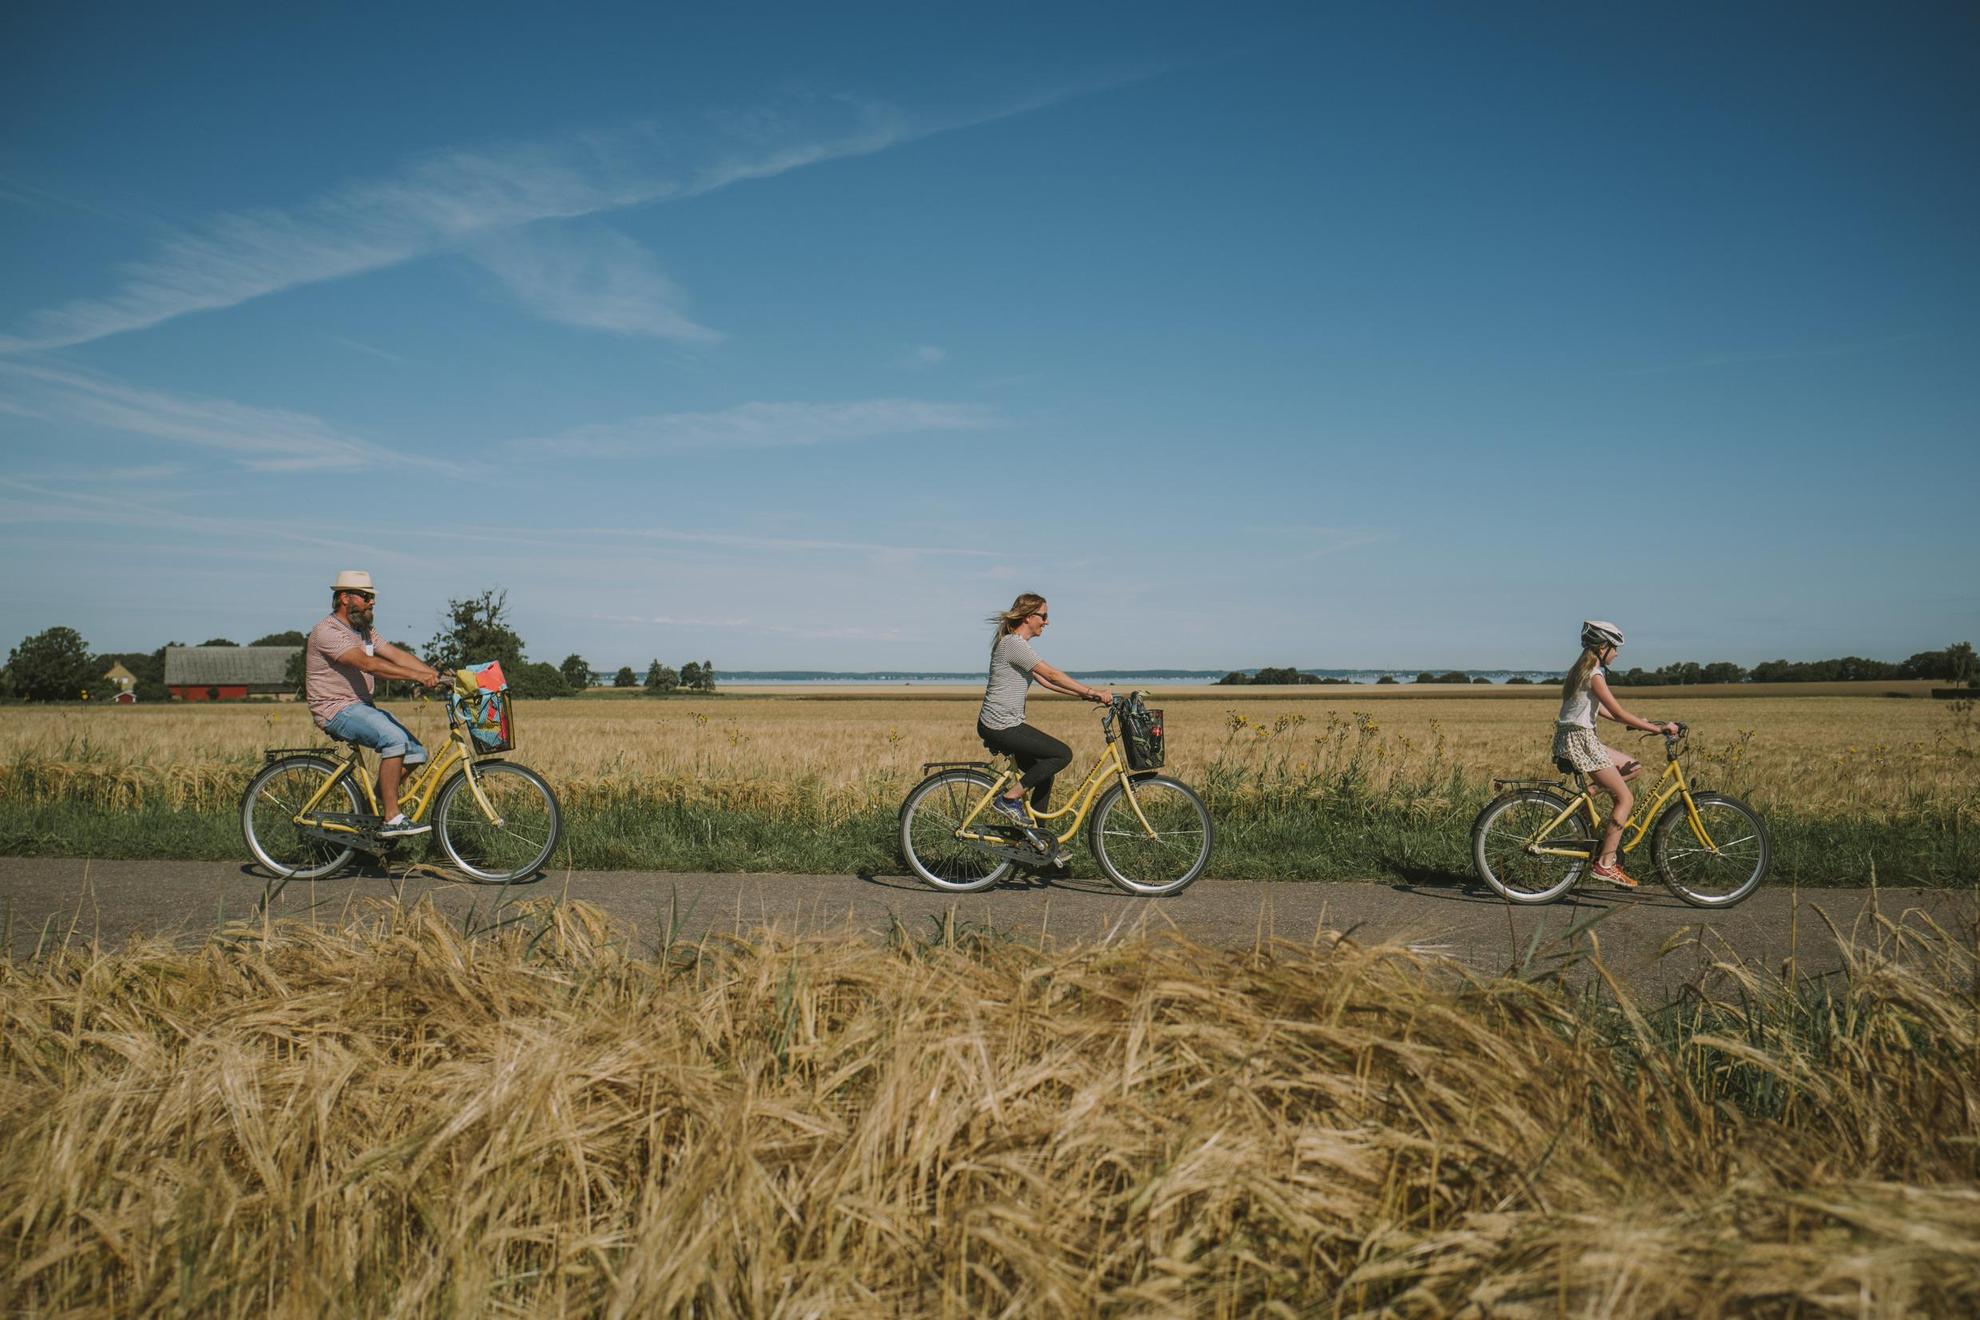 Een gezin van drie rijdt op gele fietsen op een weg tussen tarwevelden.